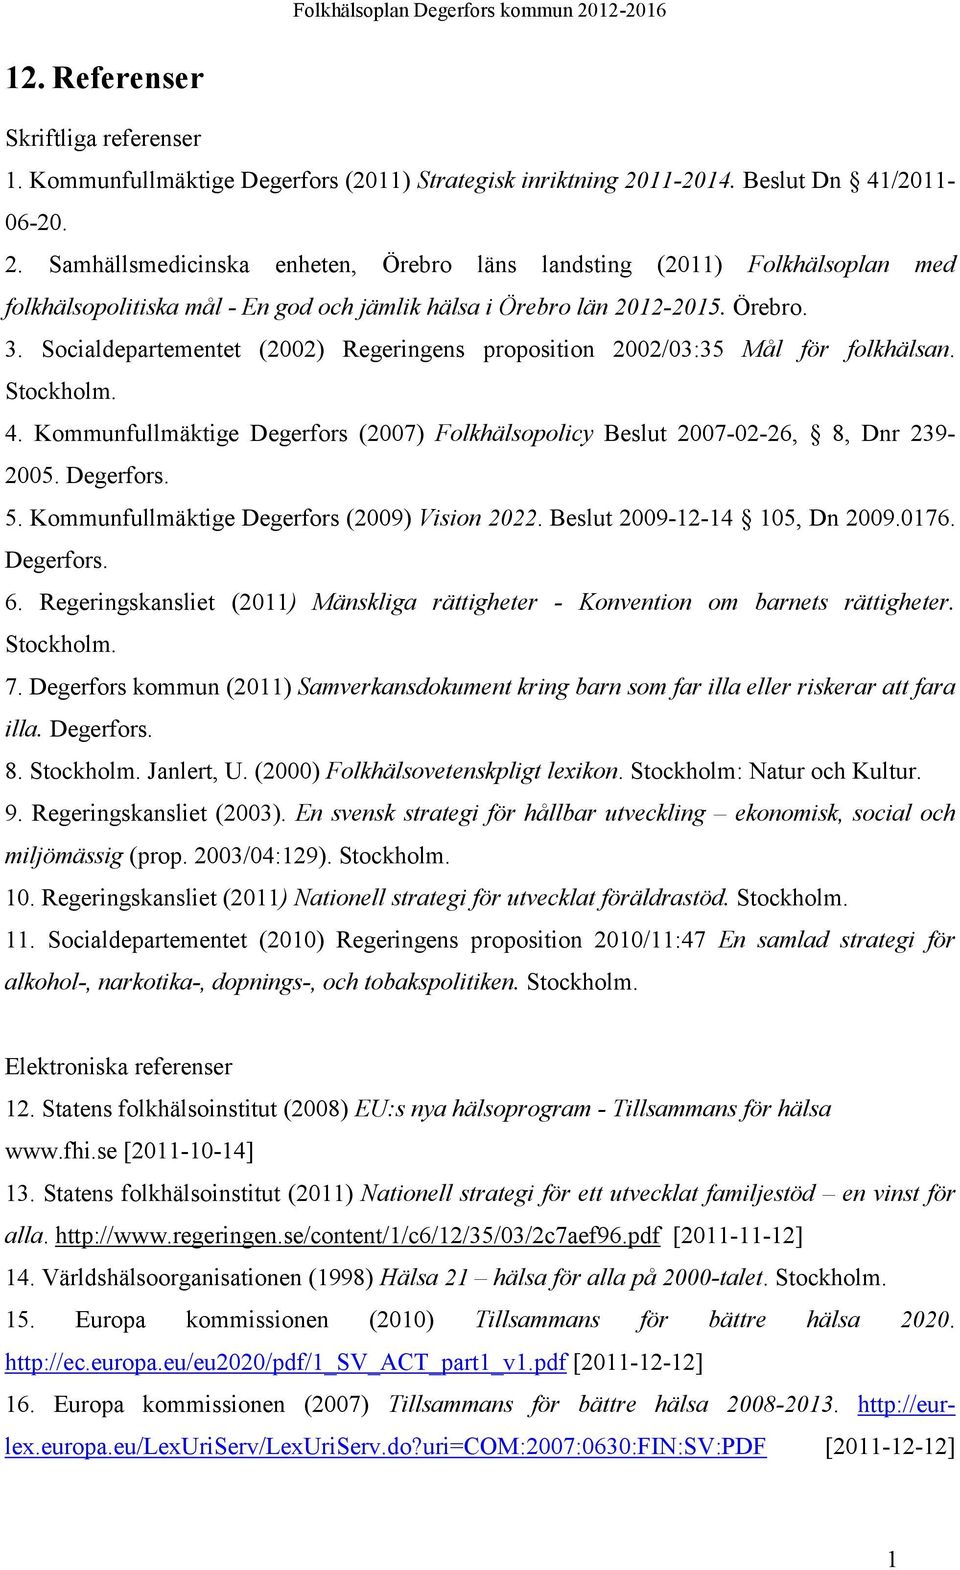 Socialdepartementet (2002) Regeringens proposition 2002/03:35 Mål för folkhälsan. Stockholm. 4. Kommunfullmäktige Degerfors (2007) Folkhälsopolicy Beslut 2007-02-26, 8, Dnr 239-2005. Degerfors. 5.